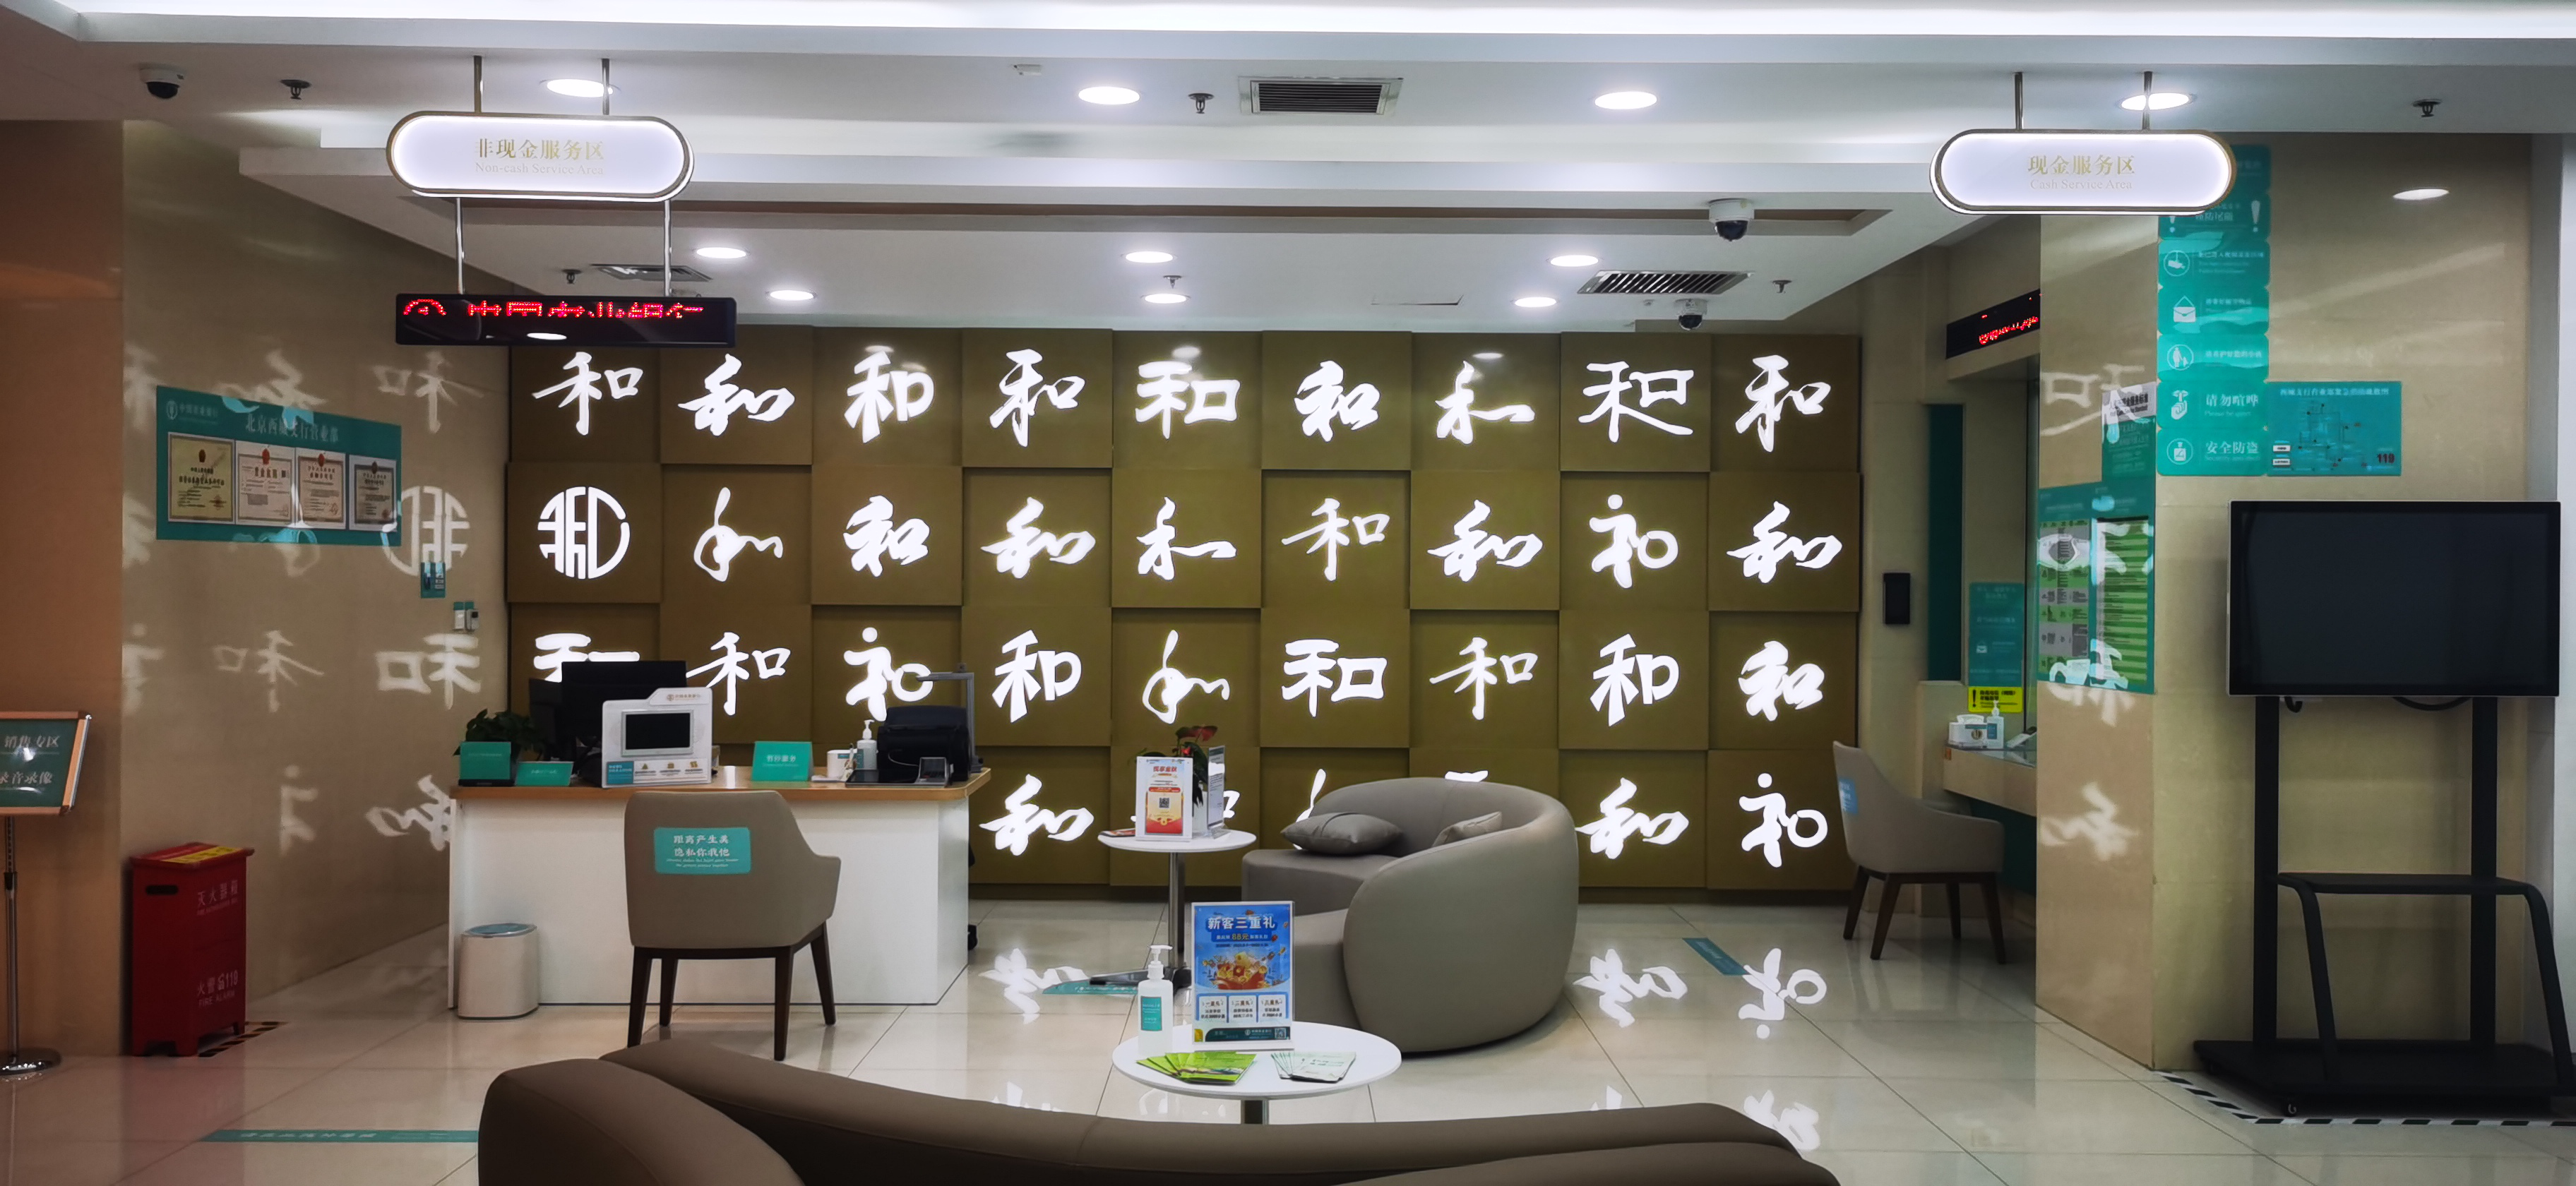 农行北京西城支行营业部优化网点厅堂环境，打造“和”文化服务理念